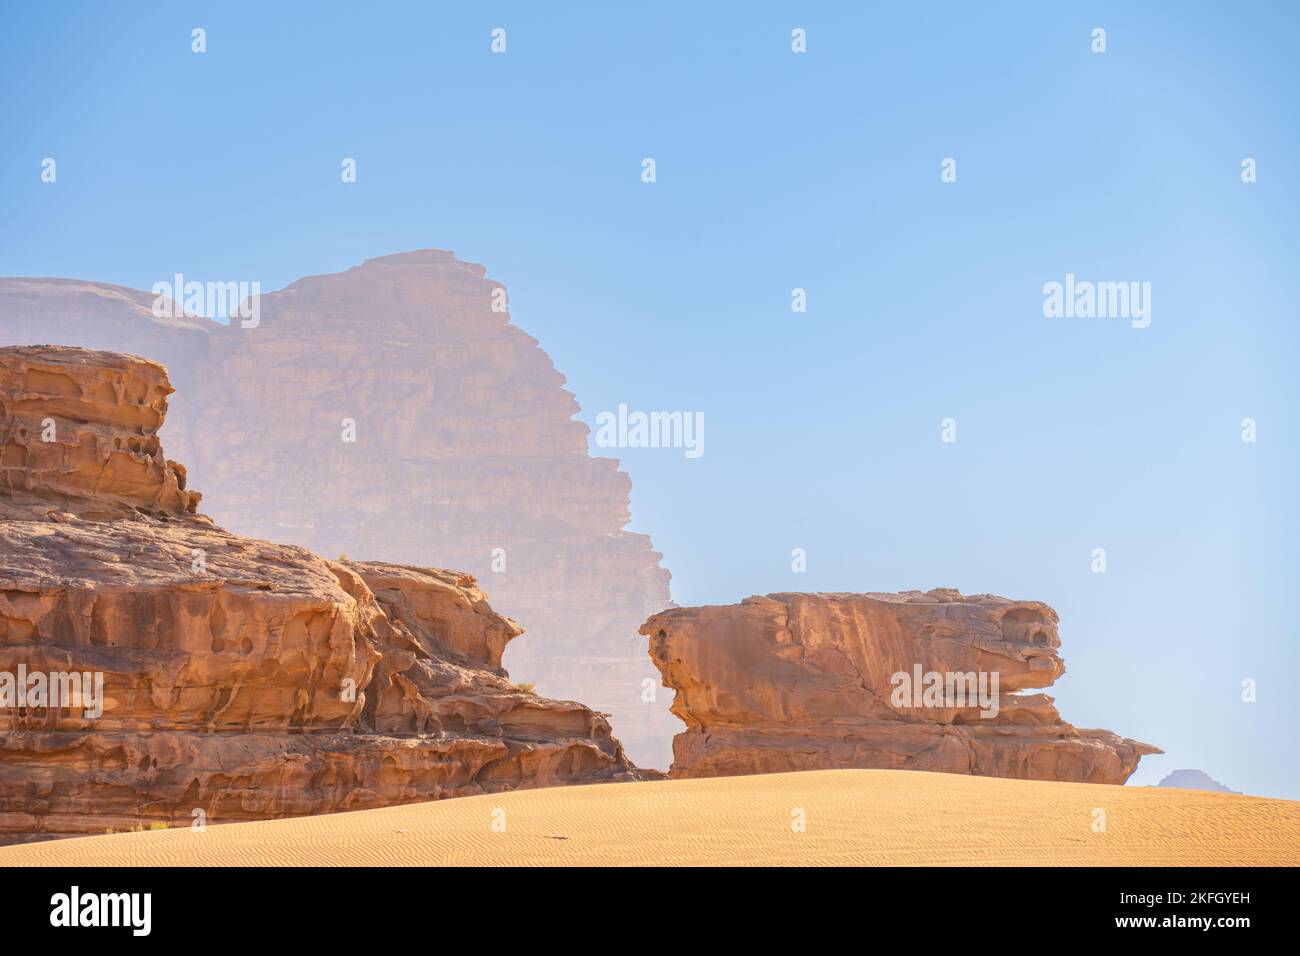 Mountains of Wadi Rum Jordan Stock Photo